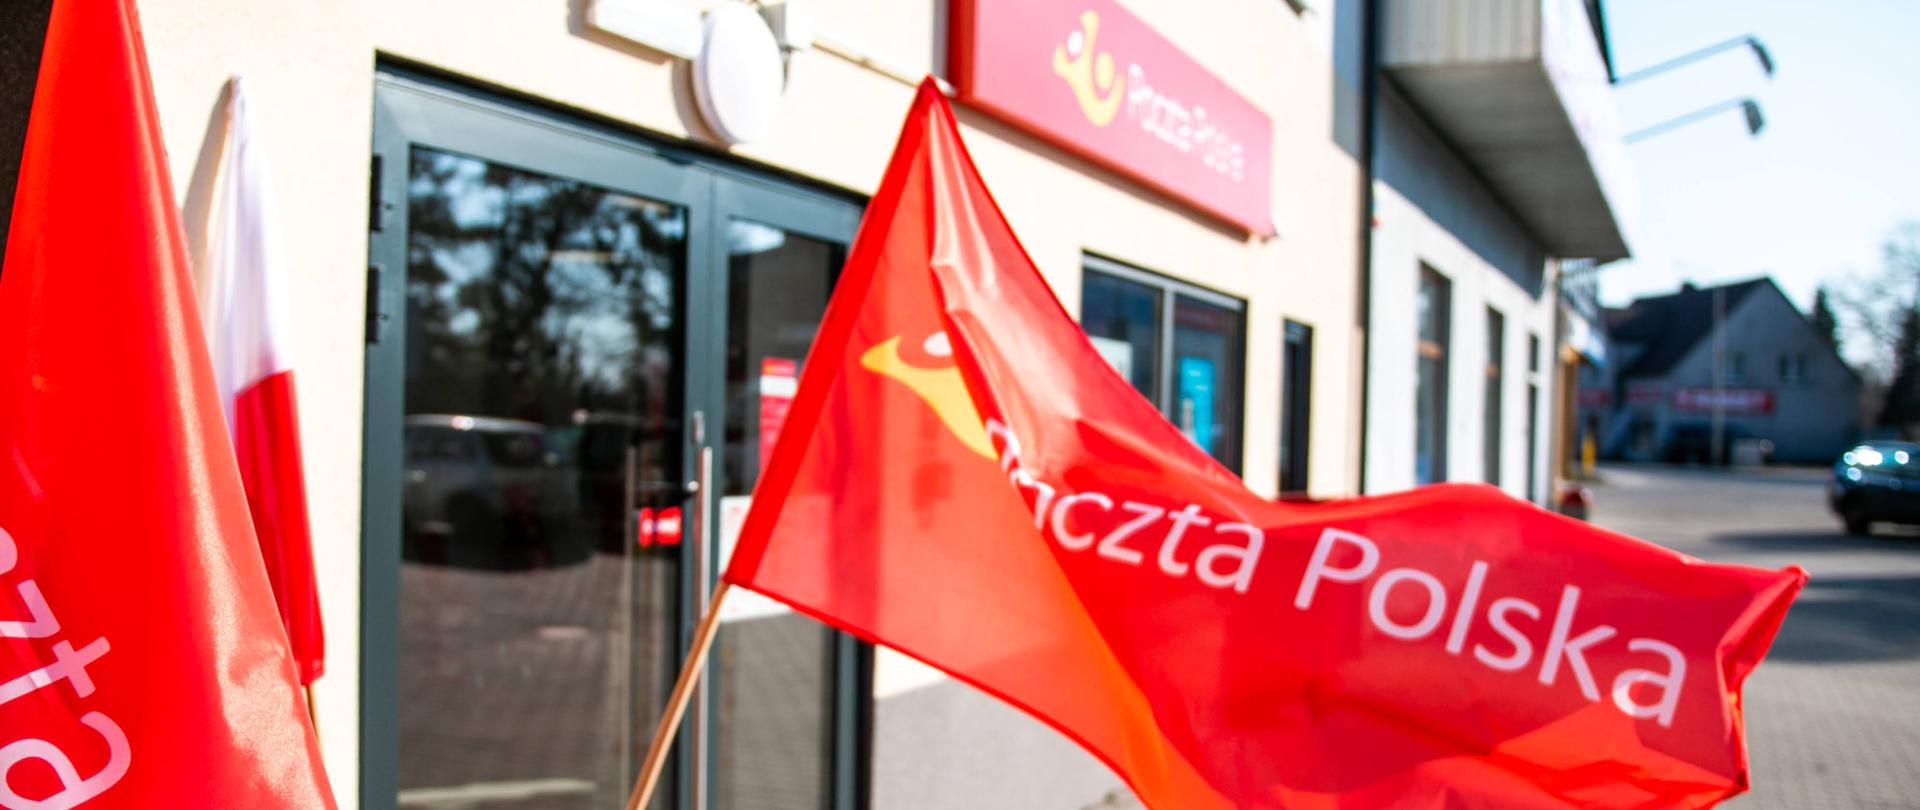 Budynek Poczty Polskiej z dużymi szklanymi drzwiami. Na pierwszym planie powiewa czerwona flaga z napisem "Poczta Polska". W tle domy. 